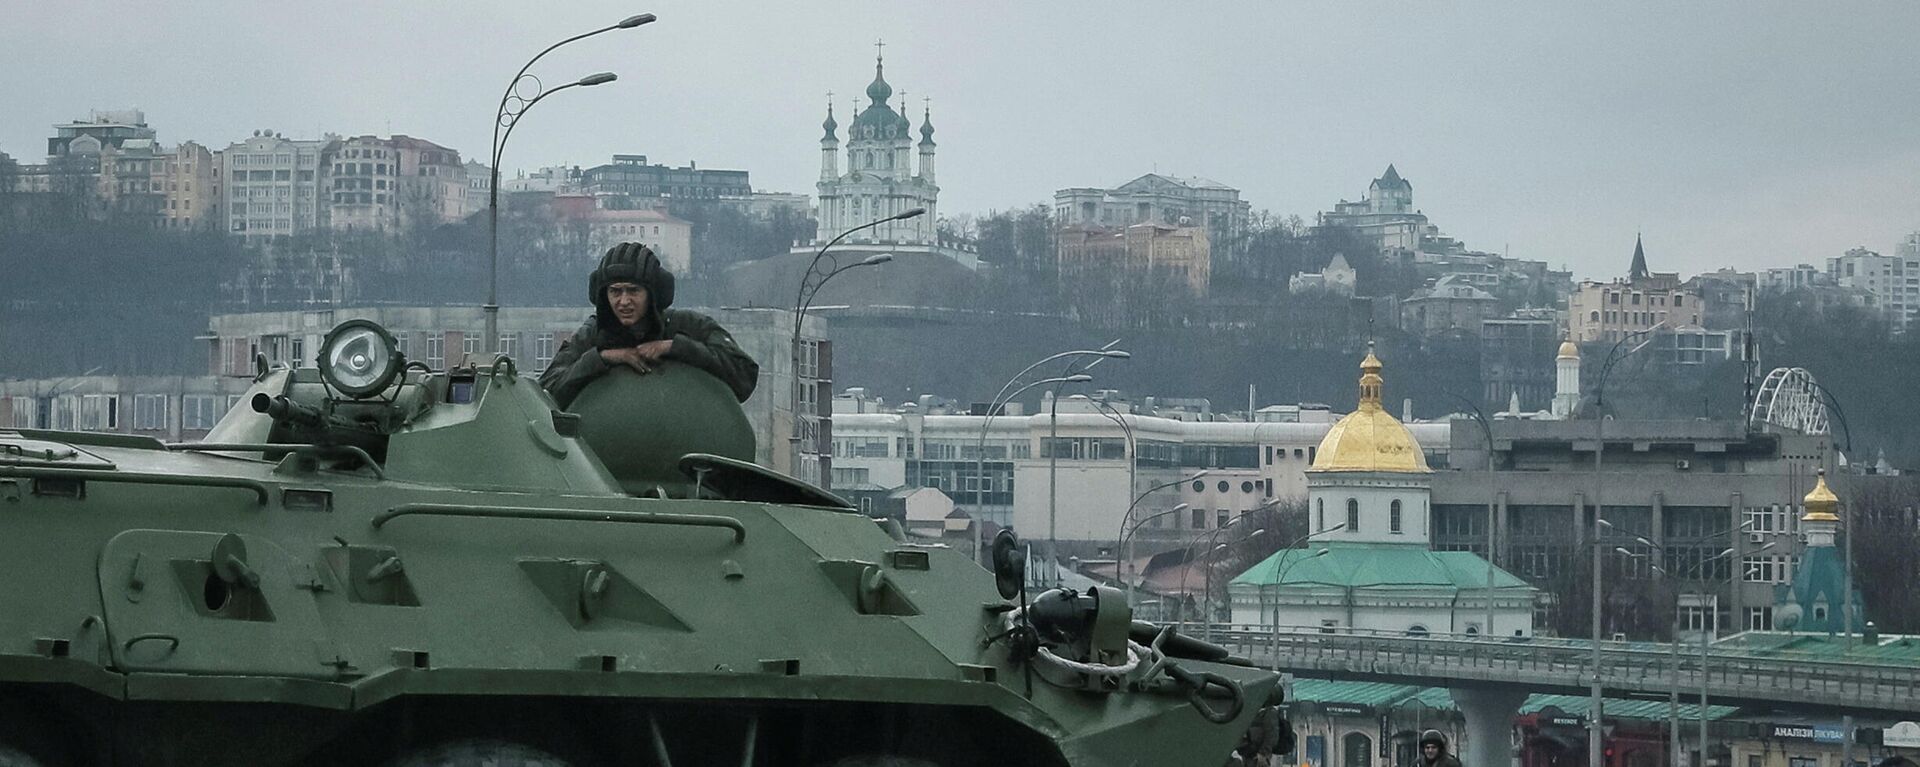 Украинские военнослужащие на мосту в Киеве, 25 февраля 2022 года - Sputnik Латвия, 1920, 28.02.2022